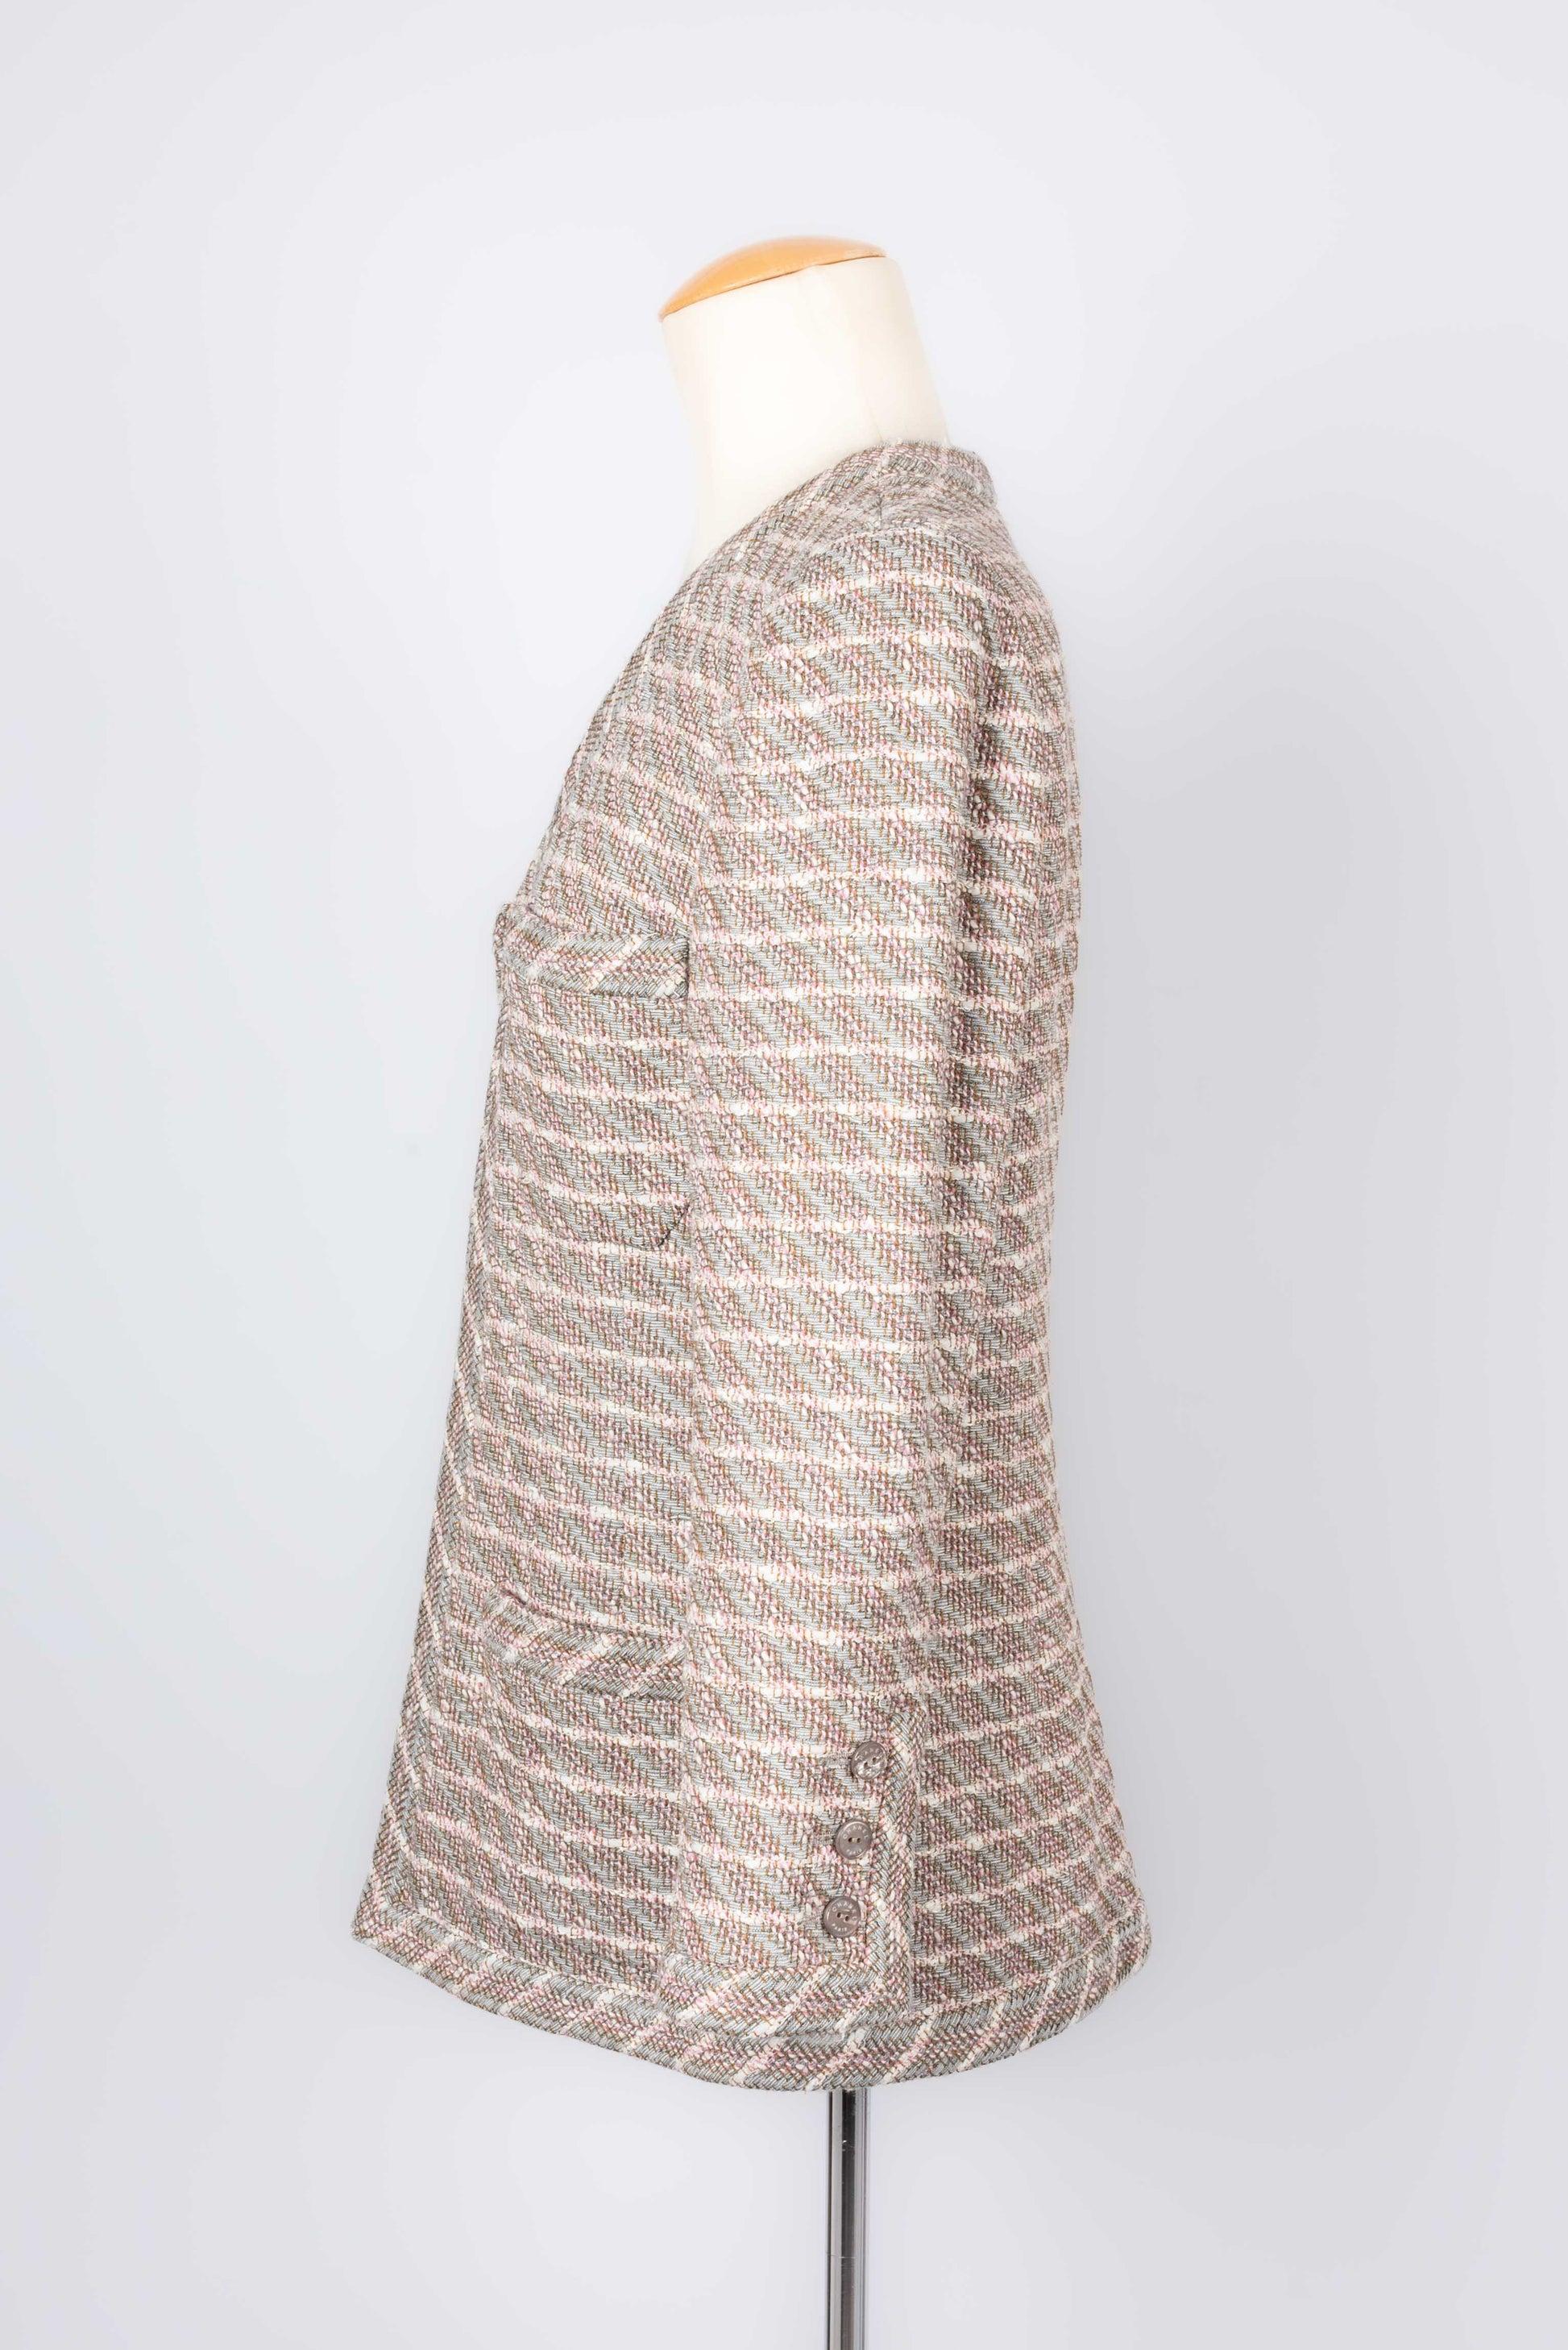 Chanel - (Fabriqué en France) Veste en tweed avec doublure en soie. Taille 40FR. Collectional printemps-été 2003.

Informations complémentaires :
Condit : Très bon état.
Dimensions : Largeur des épaules : 40 cm - Longueur des manches : 52 cm -